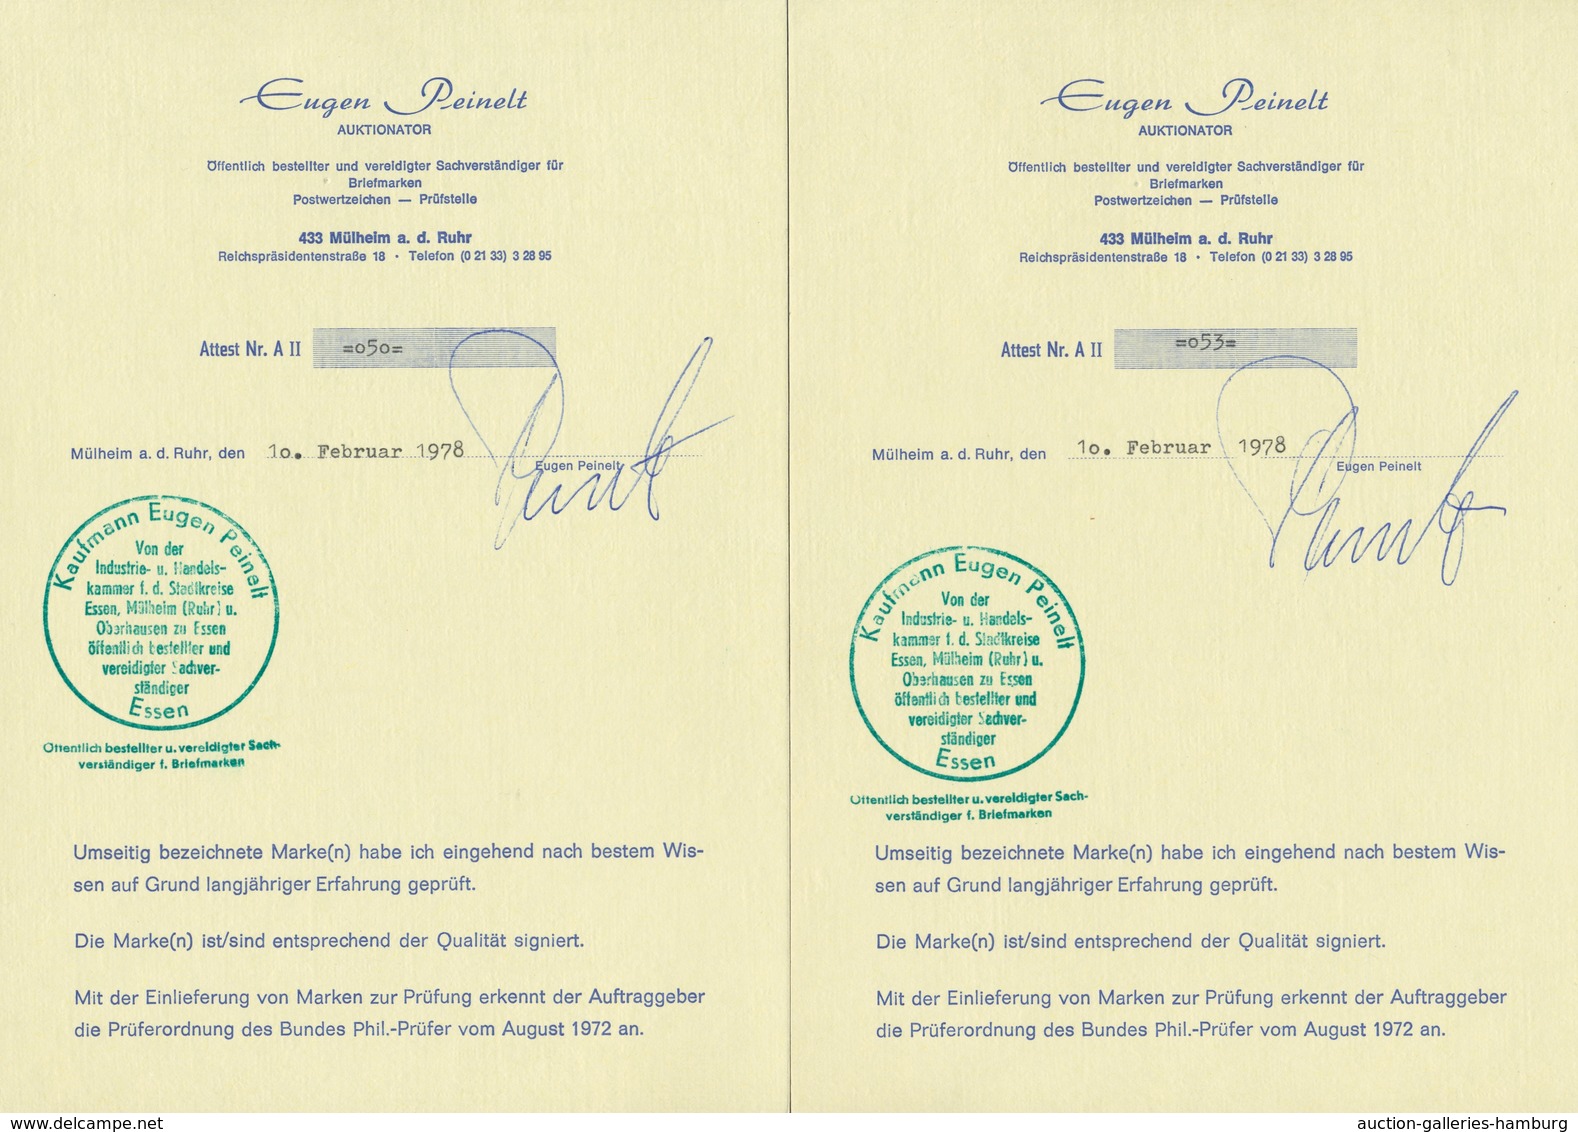 Bundesrepublik Deutschland: 1951, "Posthorn", Postfrischer Satz In Tadelloser Erhaltung, Sehr Gute Z - Used Stamps